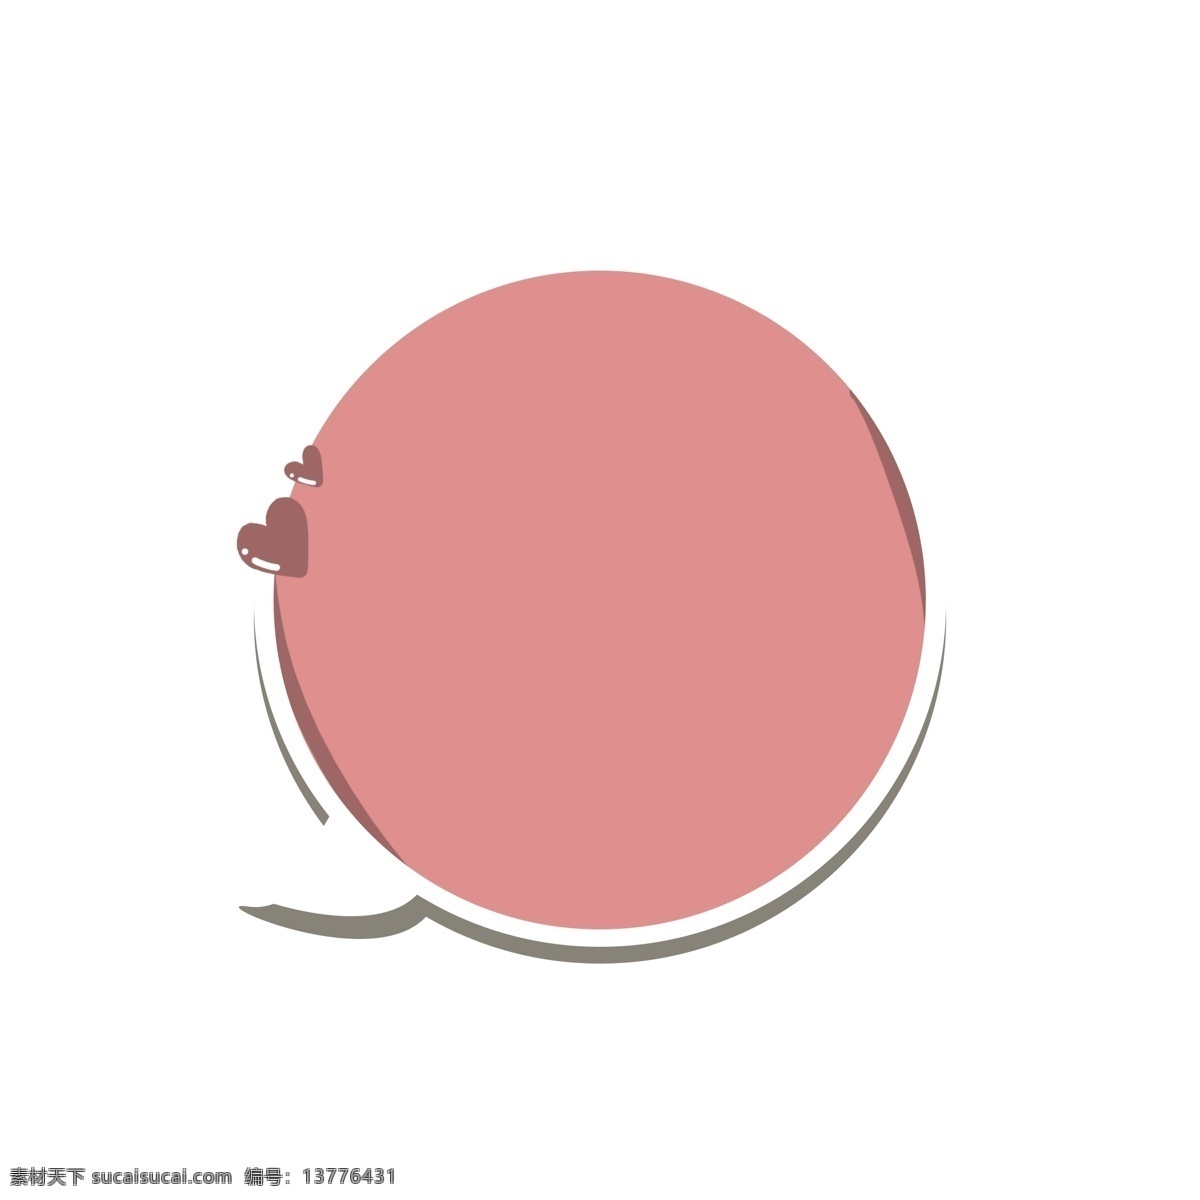 圆形 粉色 可爱 简约 气泡 对话框 圆形对话框 粉色气泡框 简约气泡框 圆形气泡框 免 扣 框